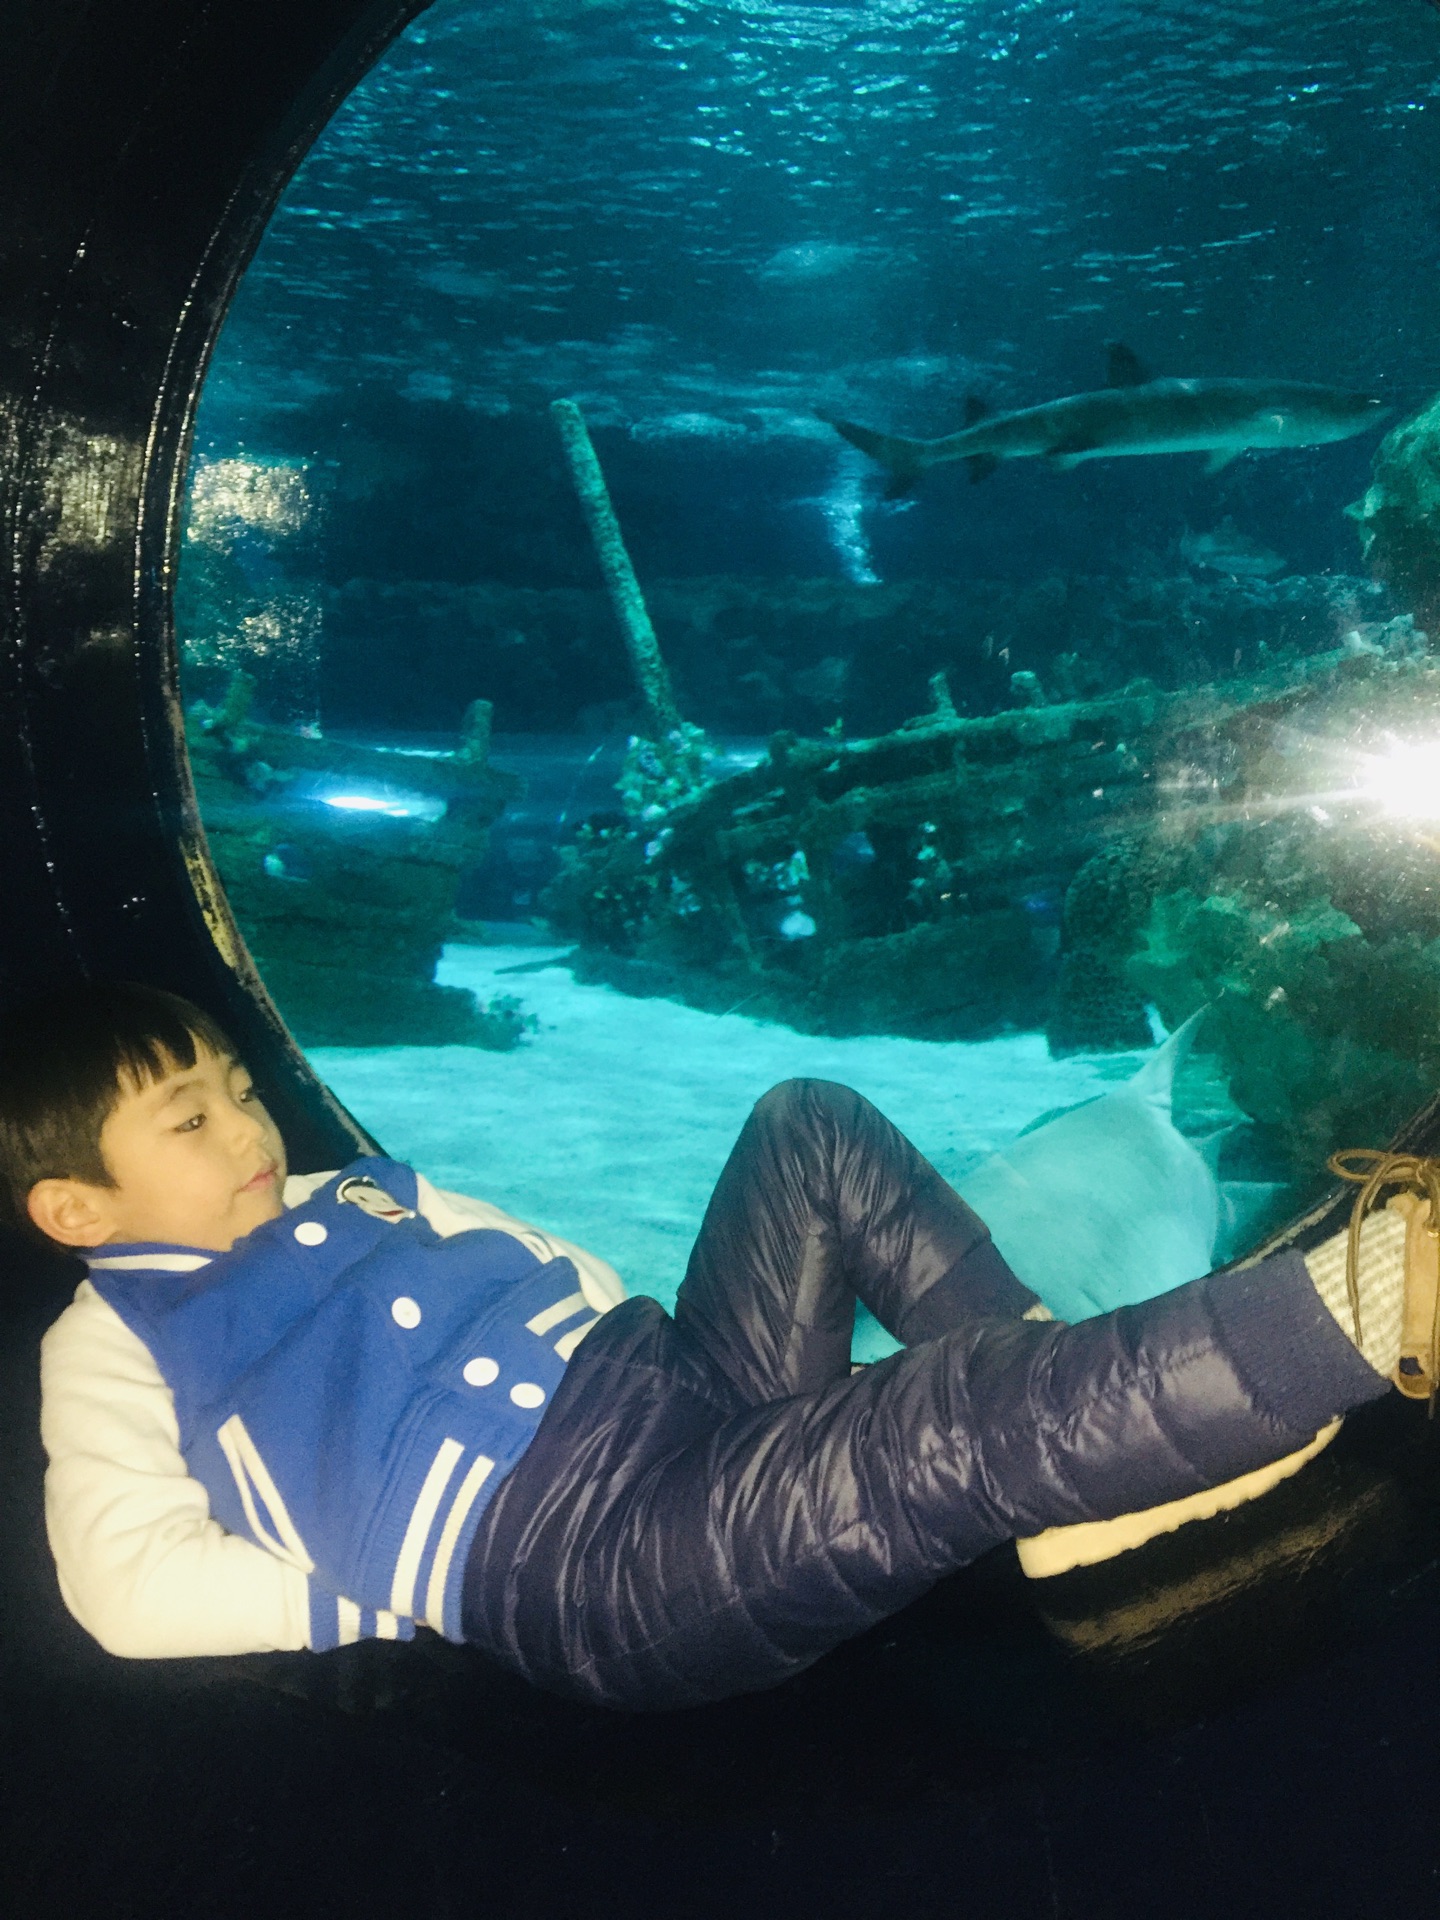 【携程攻略】北京富国海底世界景点,不错，看到了美人鱼和海狮表演，孩子挺喜欢的